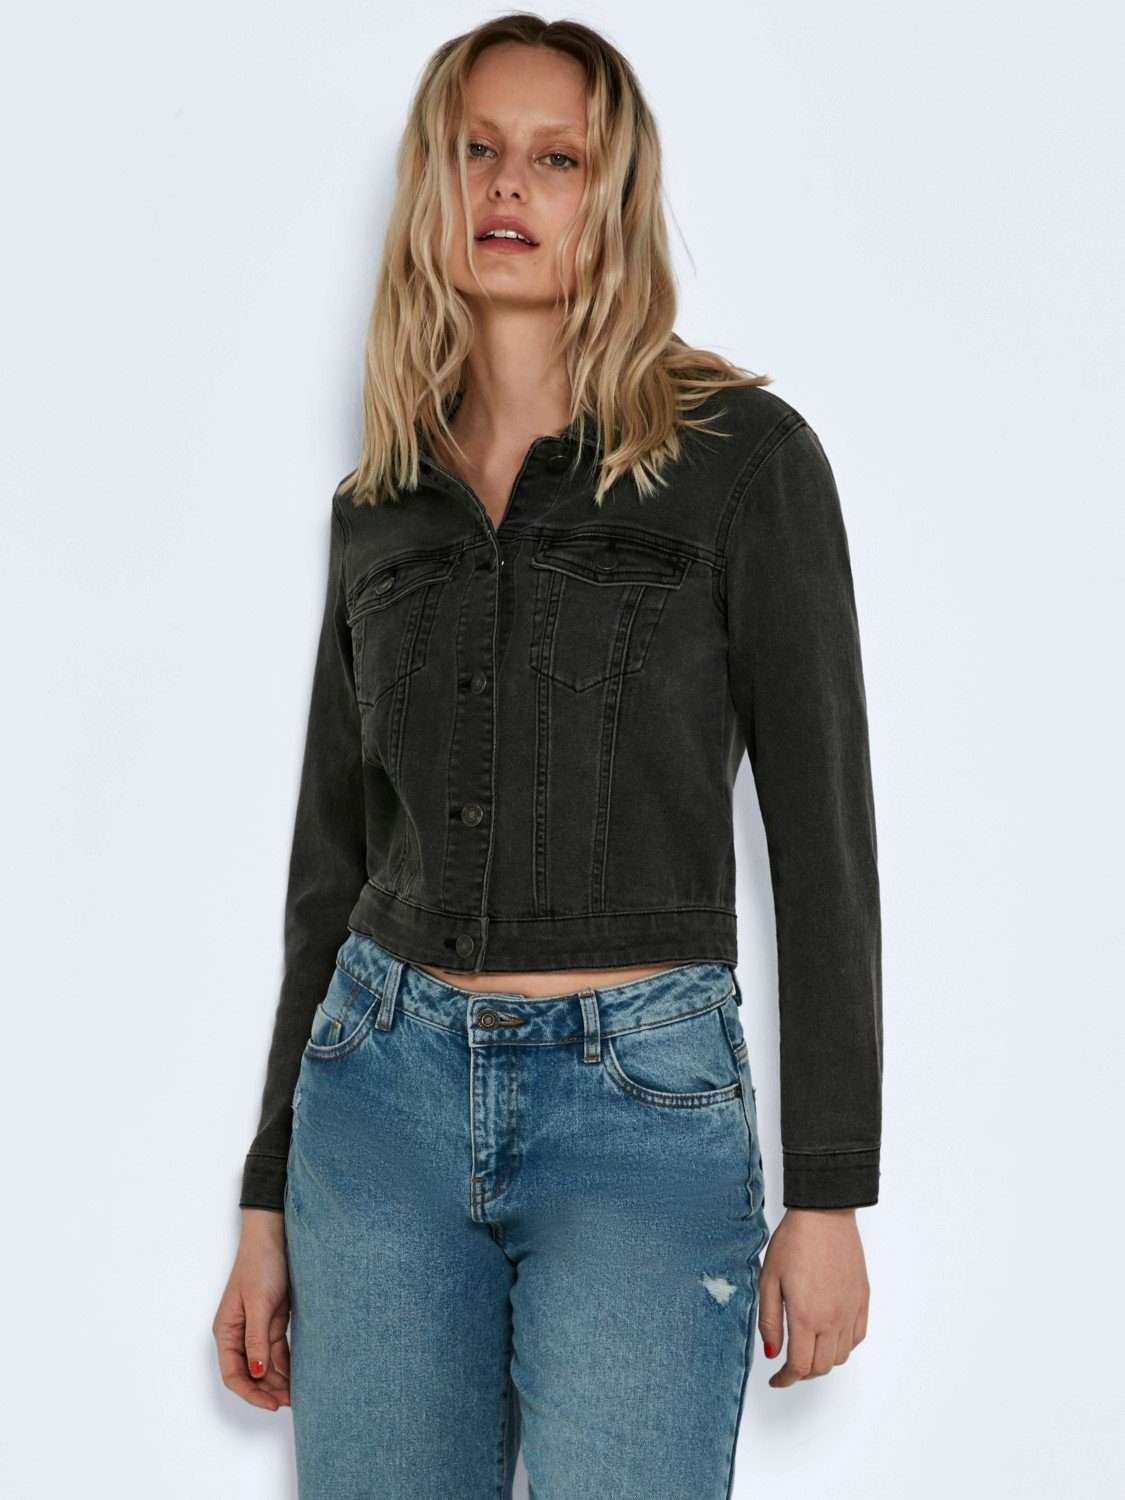 Джинсовая куртка Короткая базовая джинсовая куртка NMDEBRA (1-St) 4200 серого цвета